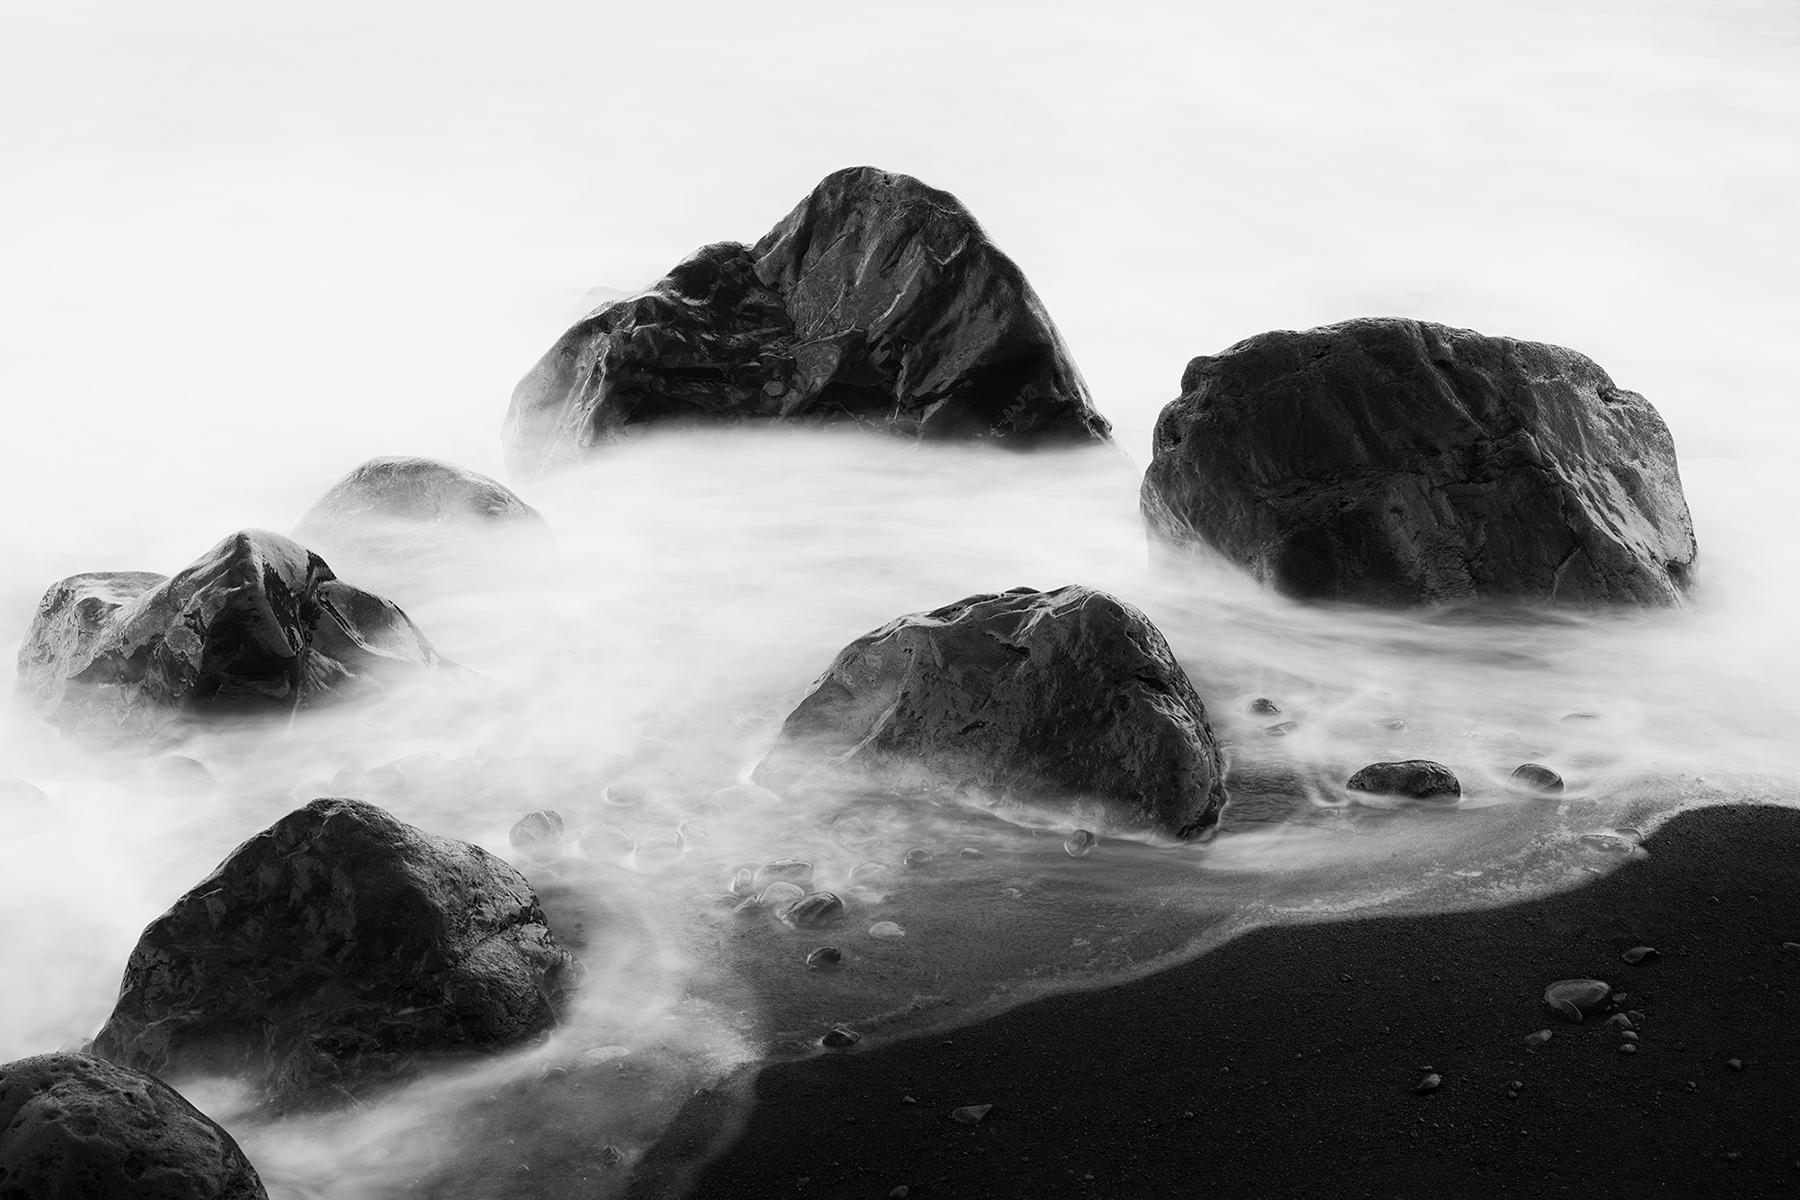 Black and White Photograph Gerald Berghammer - Black Rocks and a few Stones, photographie d'art en noir et blanc, paysage